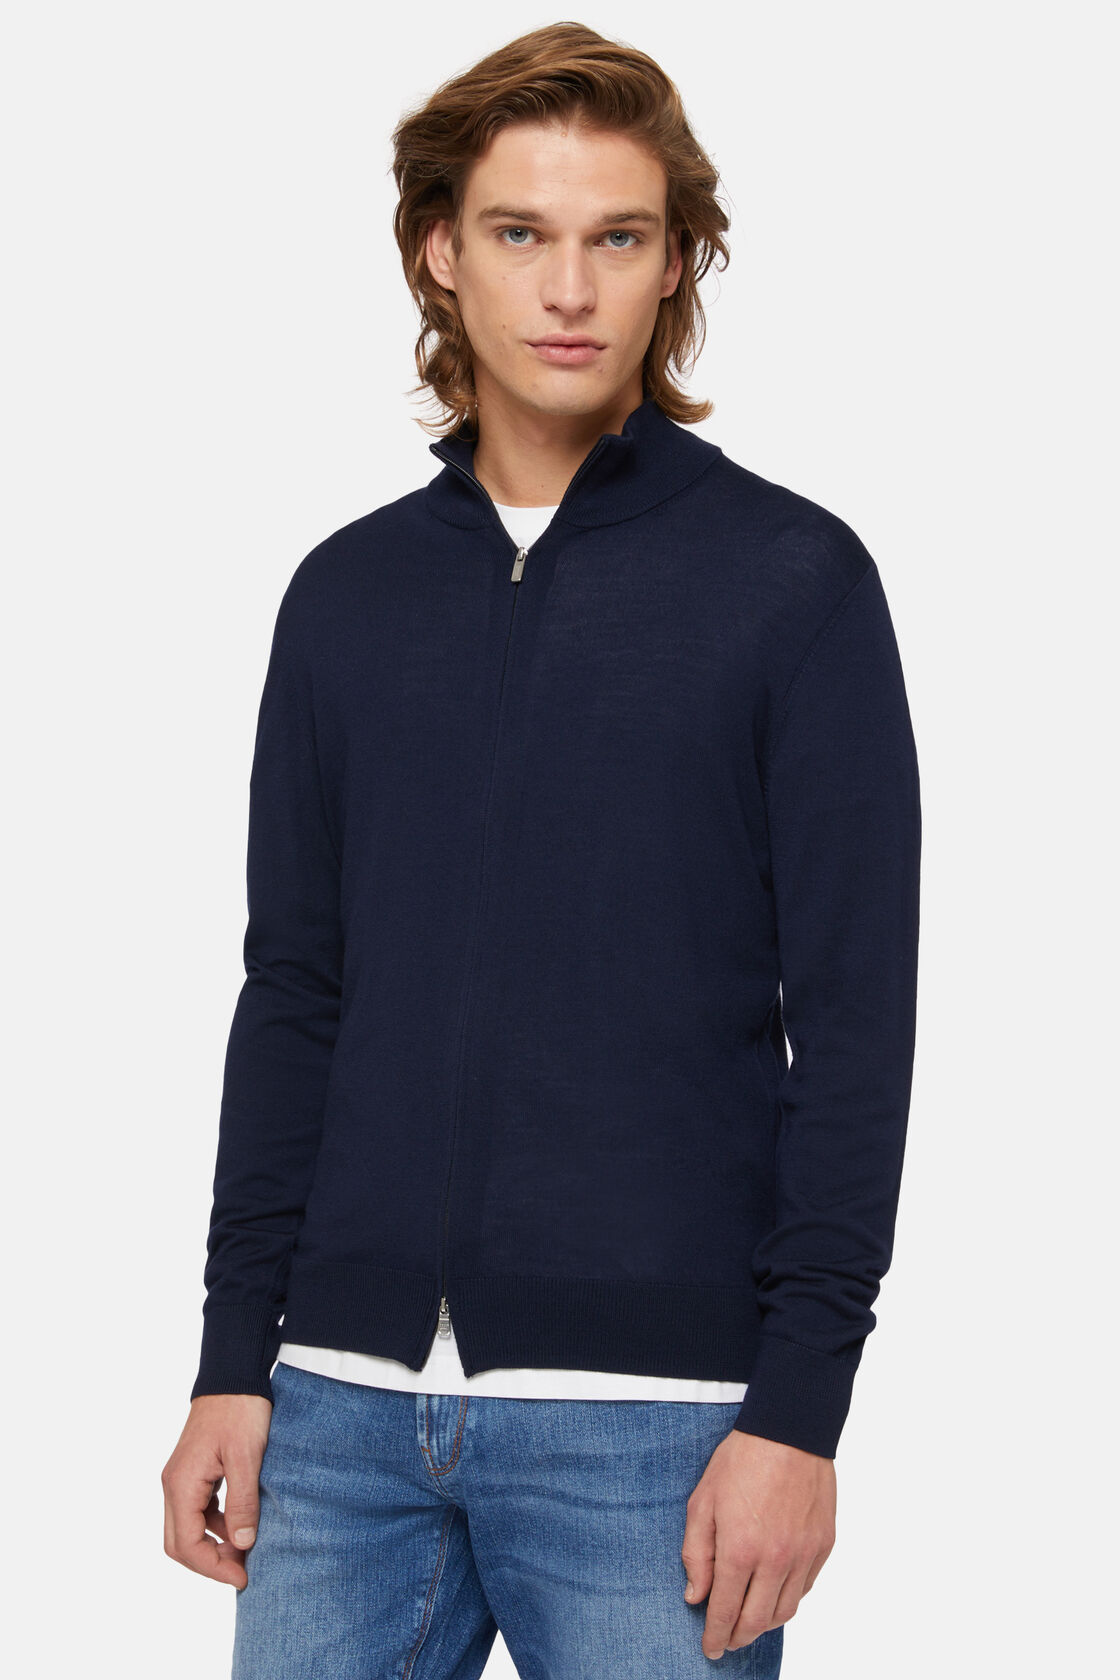 Navy Merino Wool Full Zip Jumper, Navy blue, hi-res